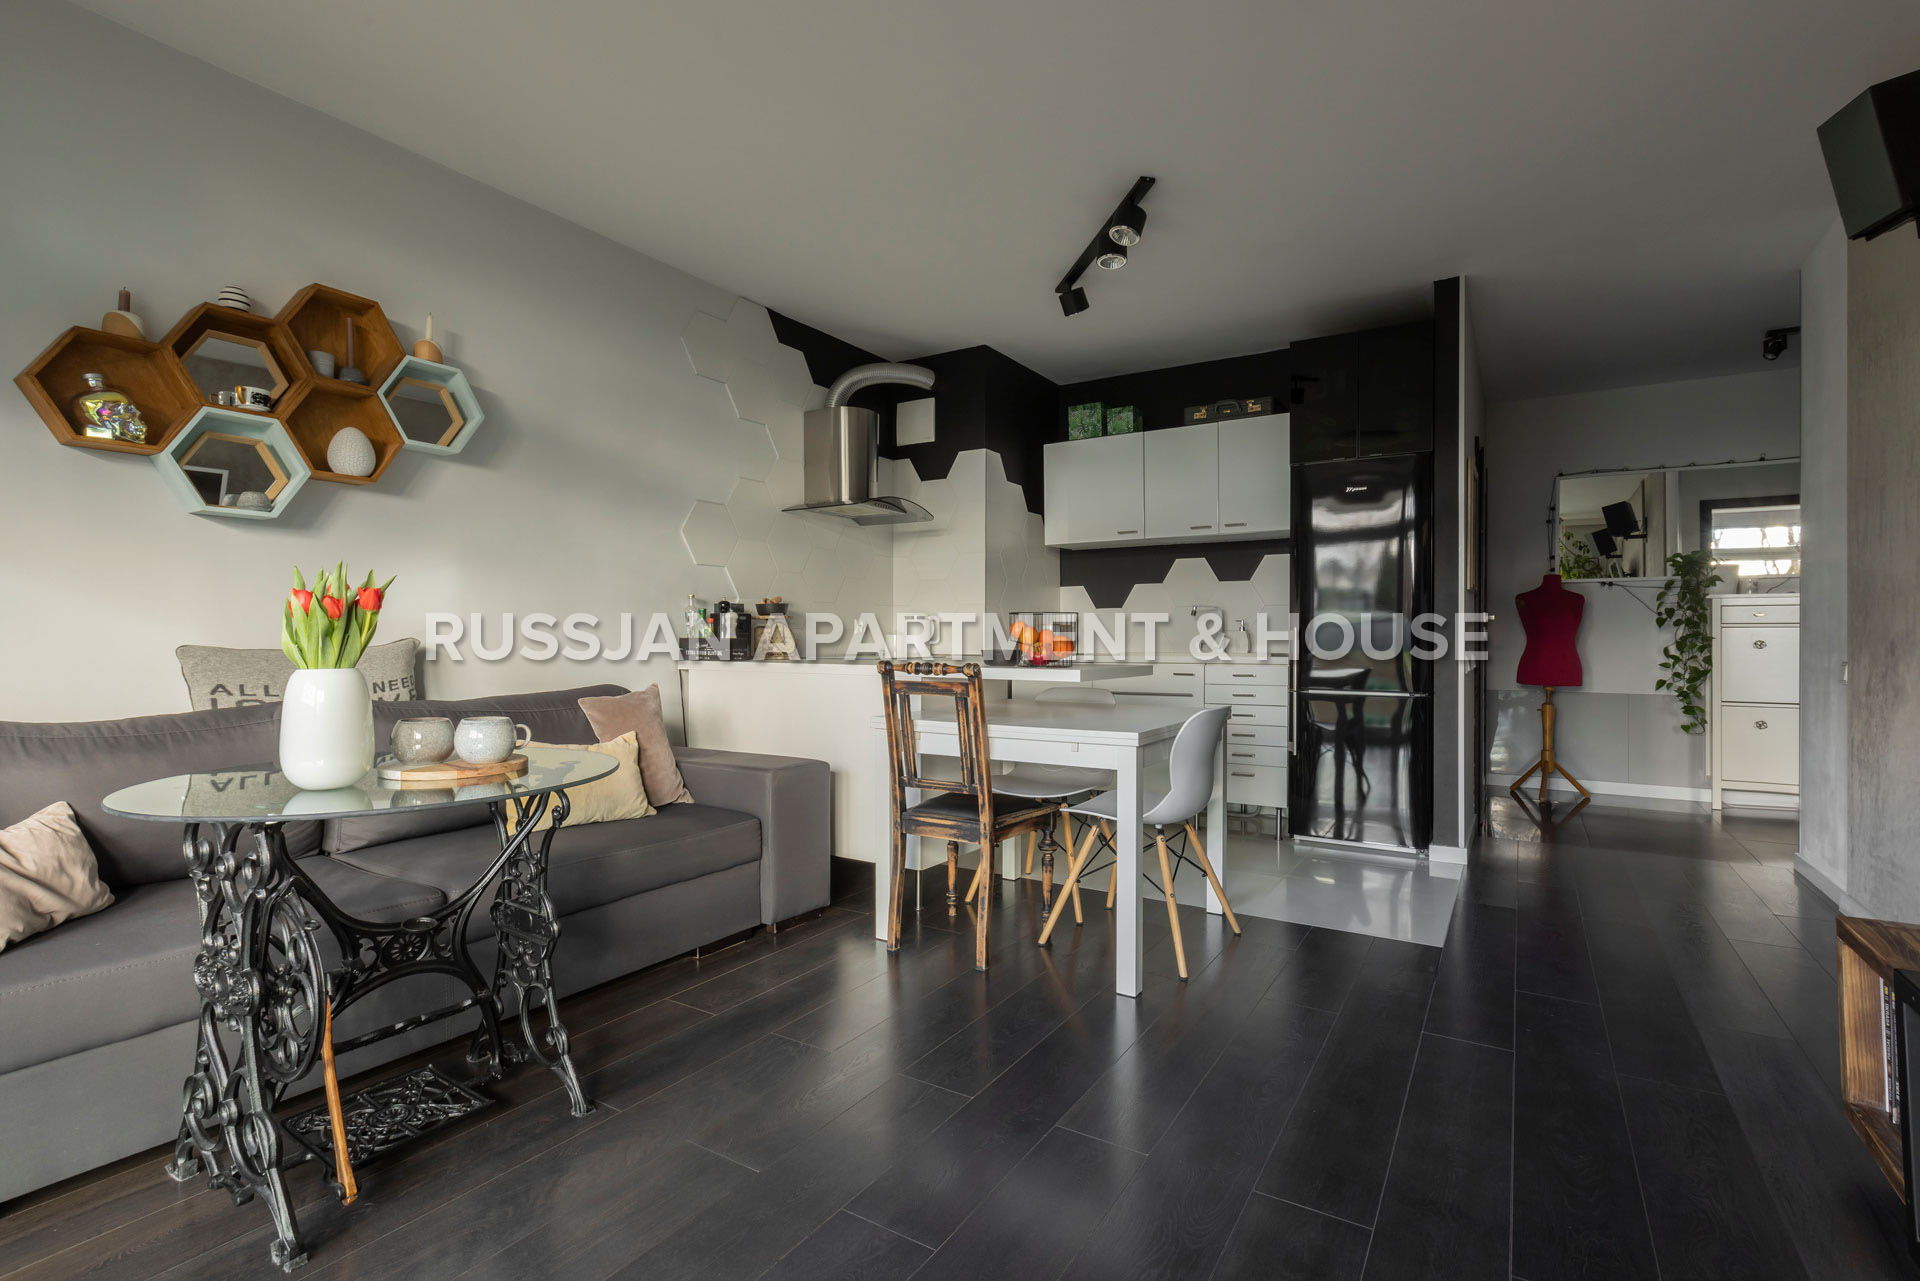 Mieszkanie Gdynia Mały Kack Ulica Strzelców | RUSSJAN Apartment & House